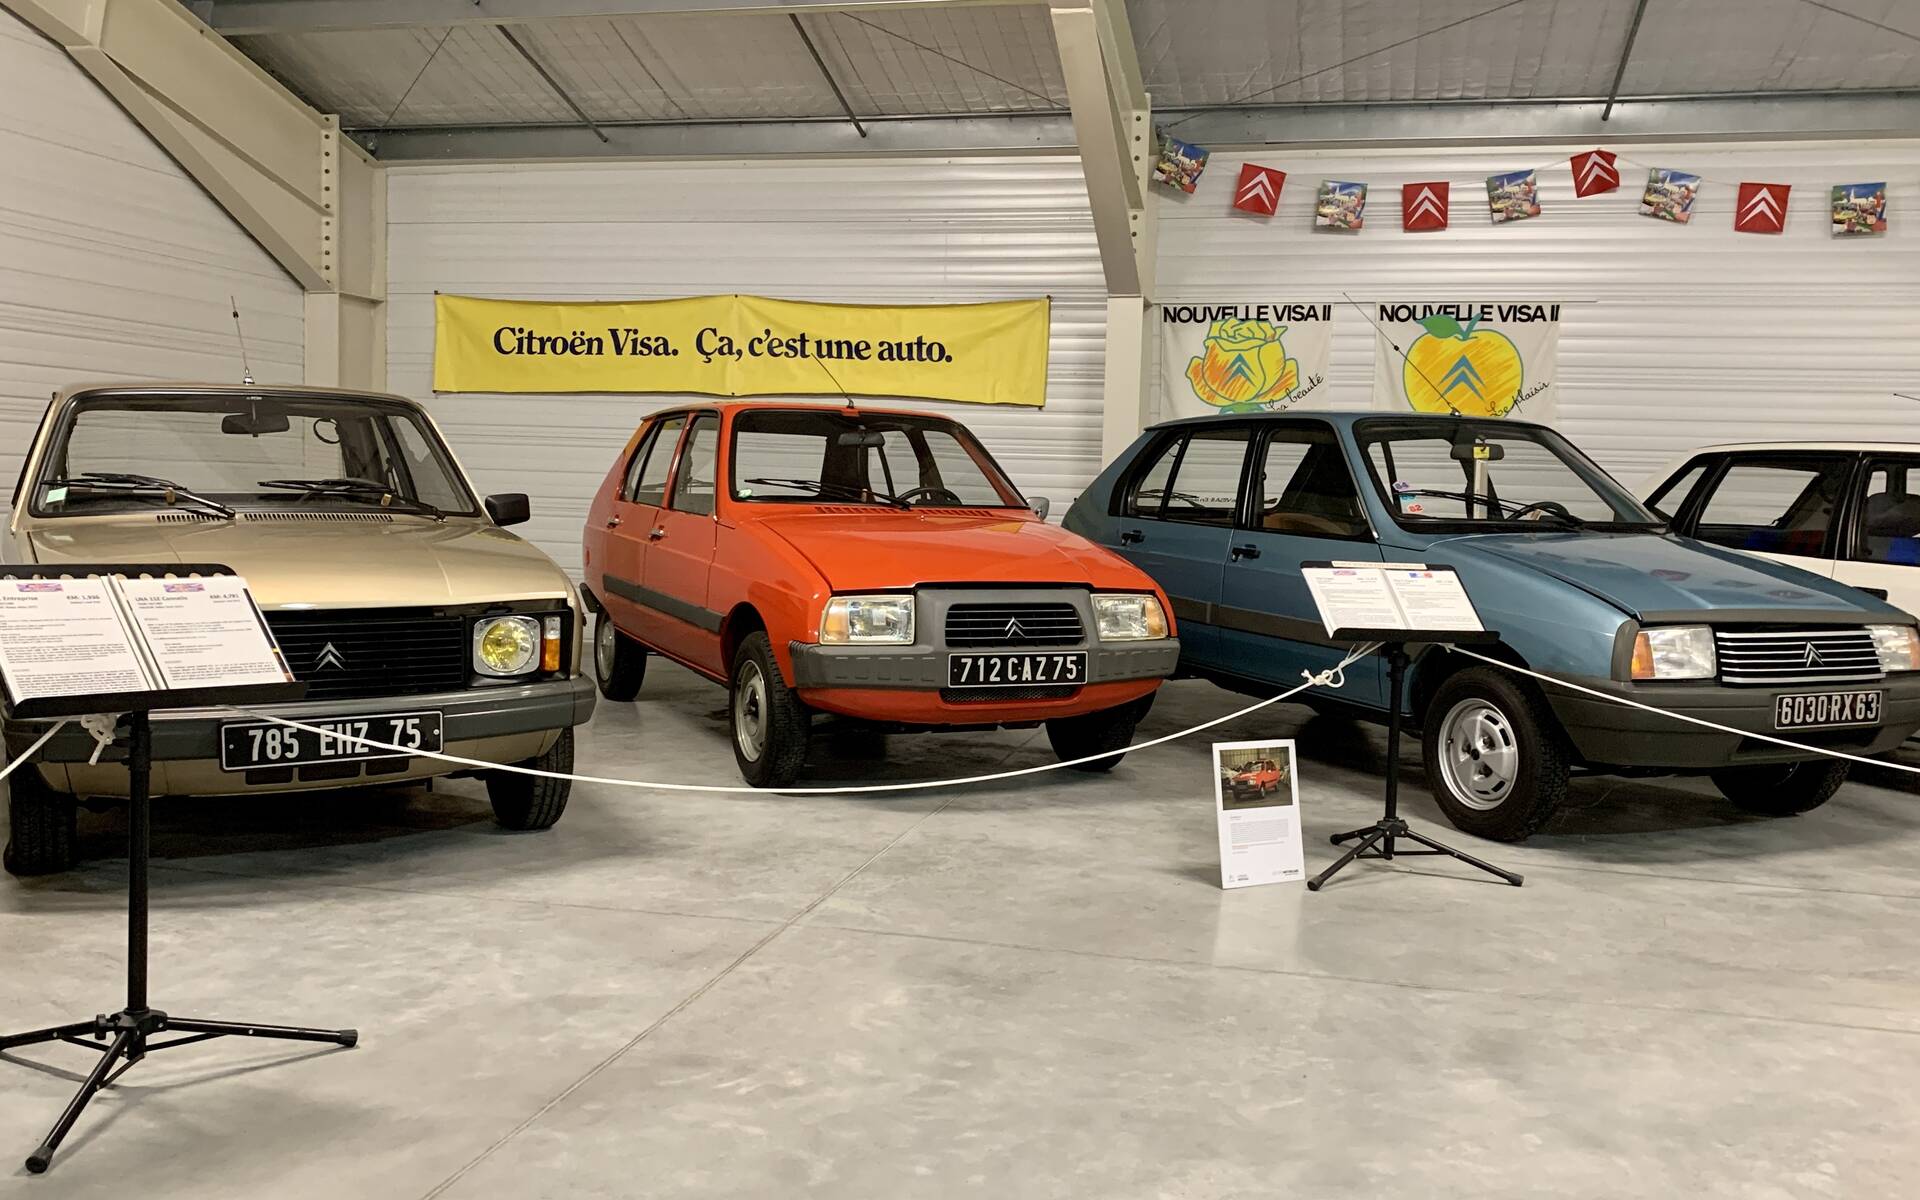 Photos: plus de 100 Citroën d'exception réunies dans un musée en France 543122-photos-plus-de-100-citroen-d-exception-reunies-dans-un-musee-en-france